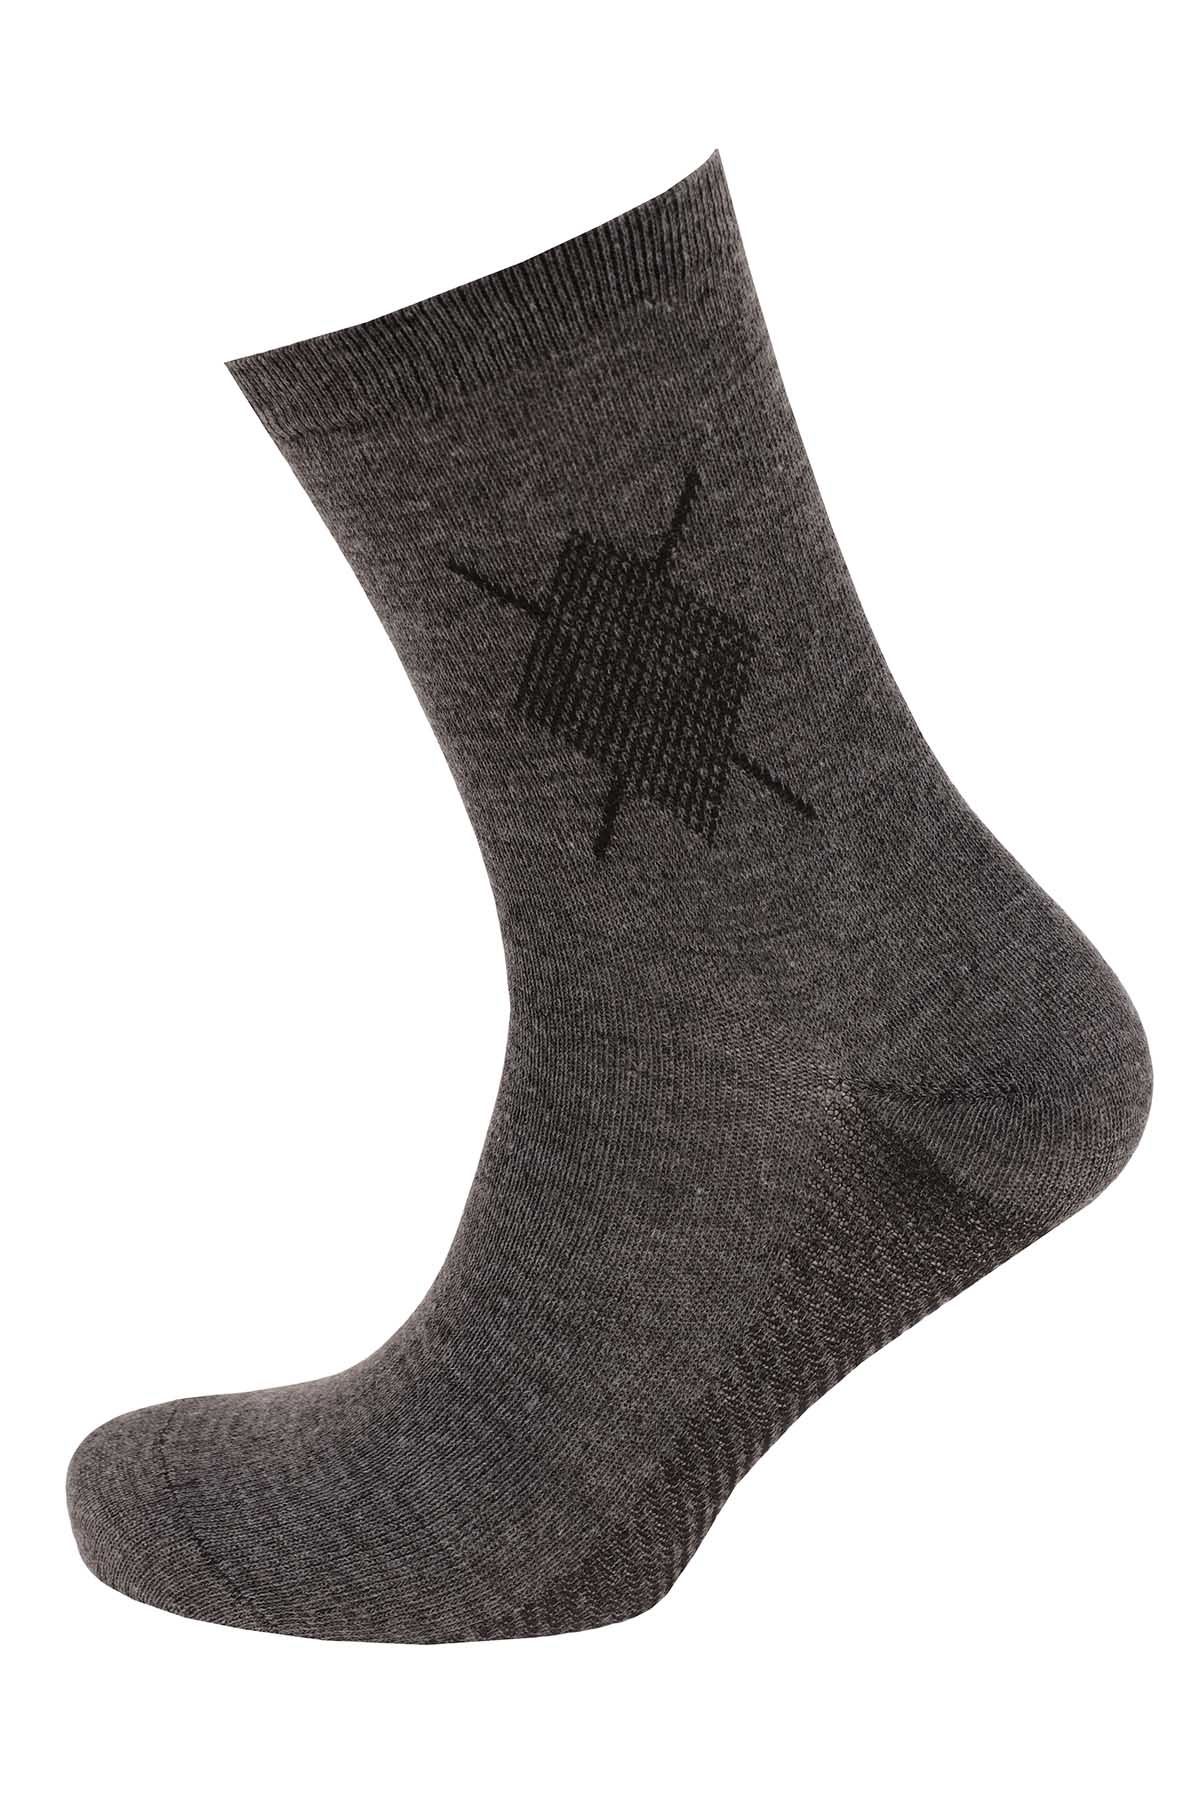 Комплект носков мужских Береза Ромб в ассортименте 41-47, 12 пар